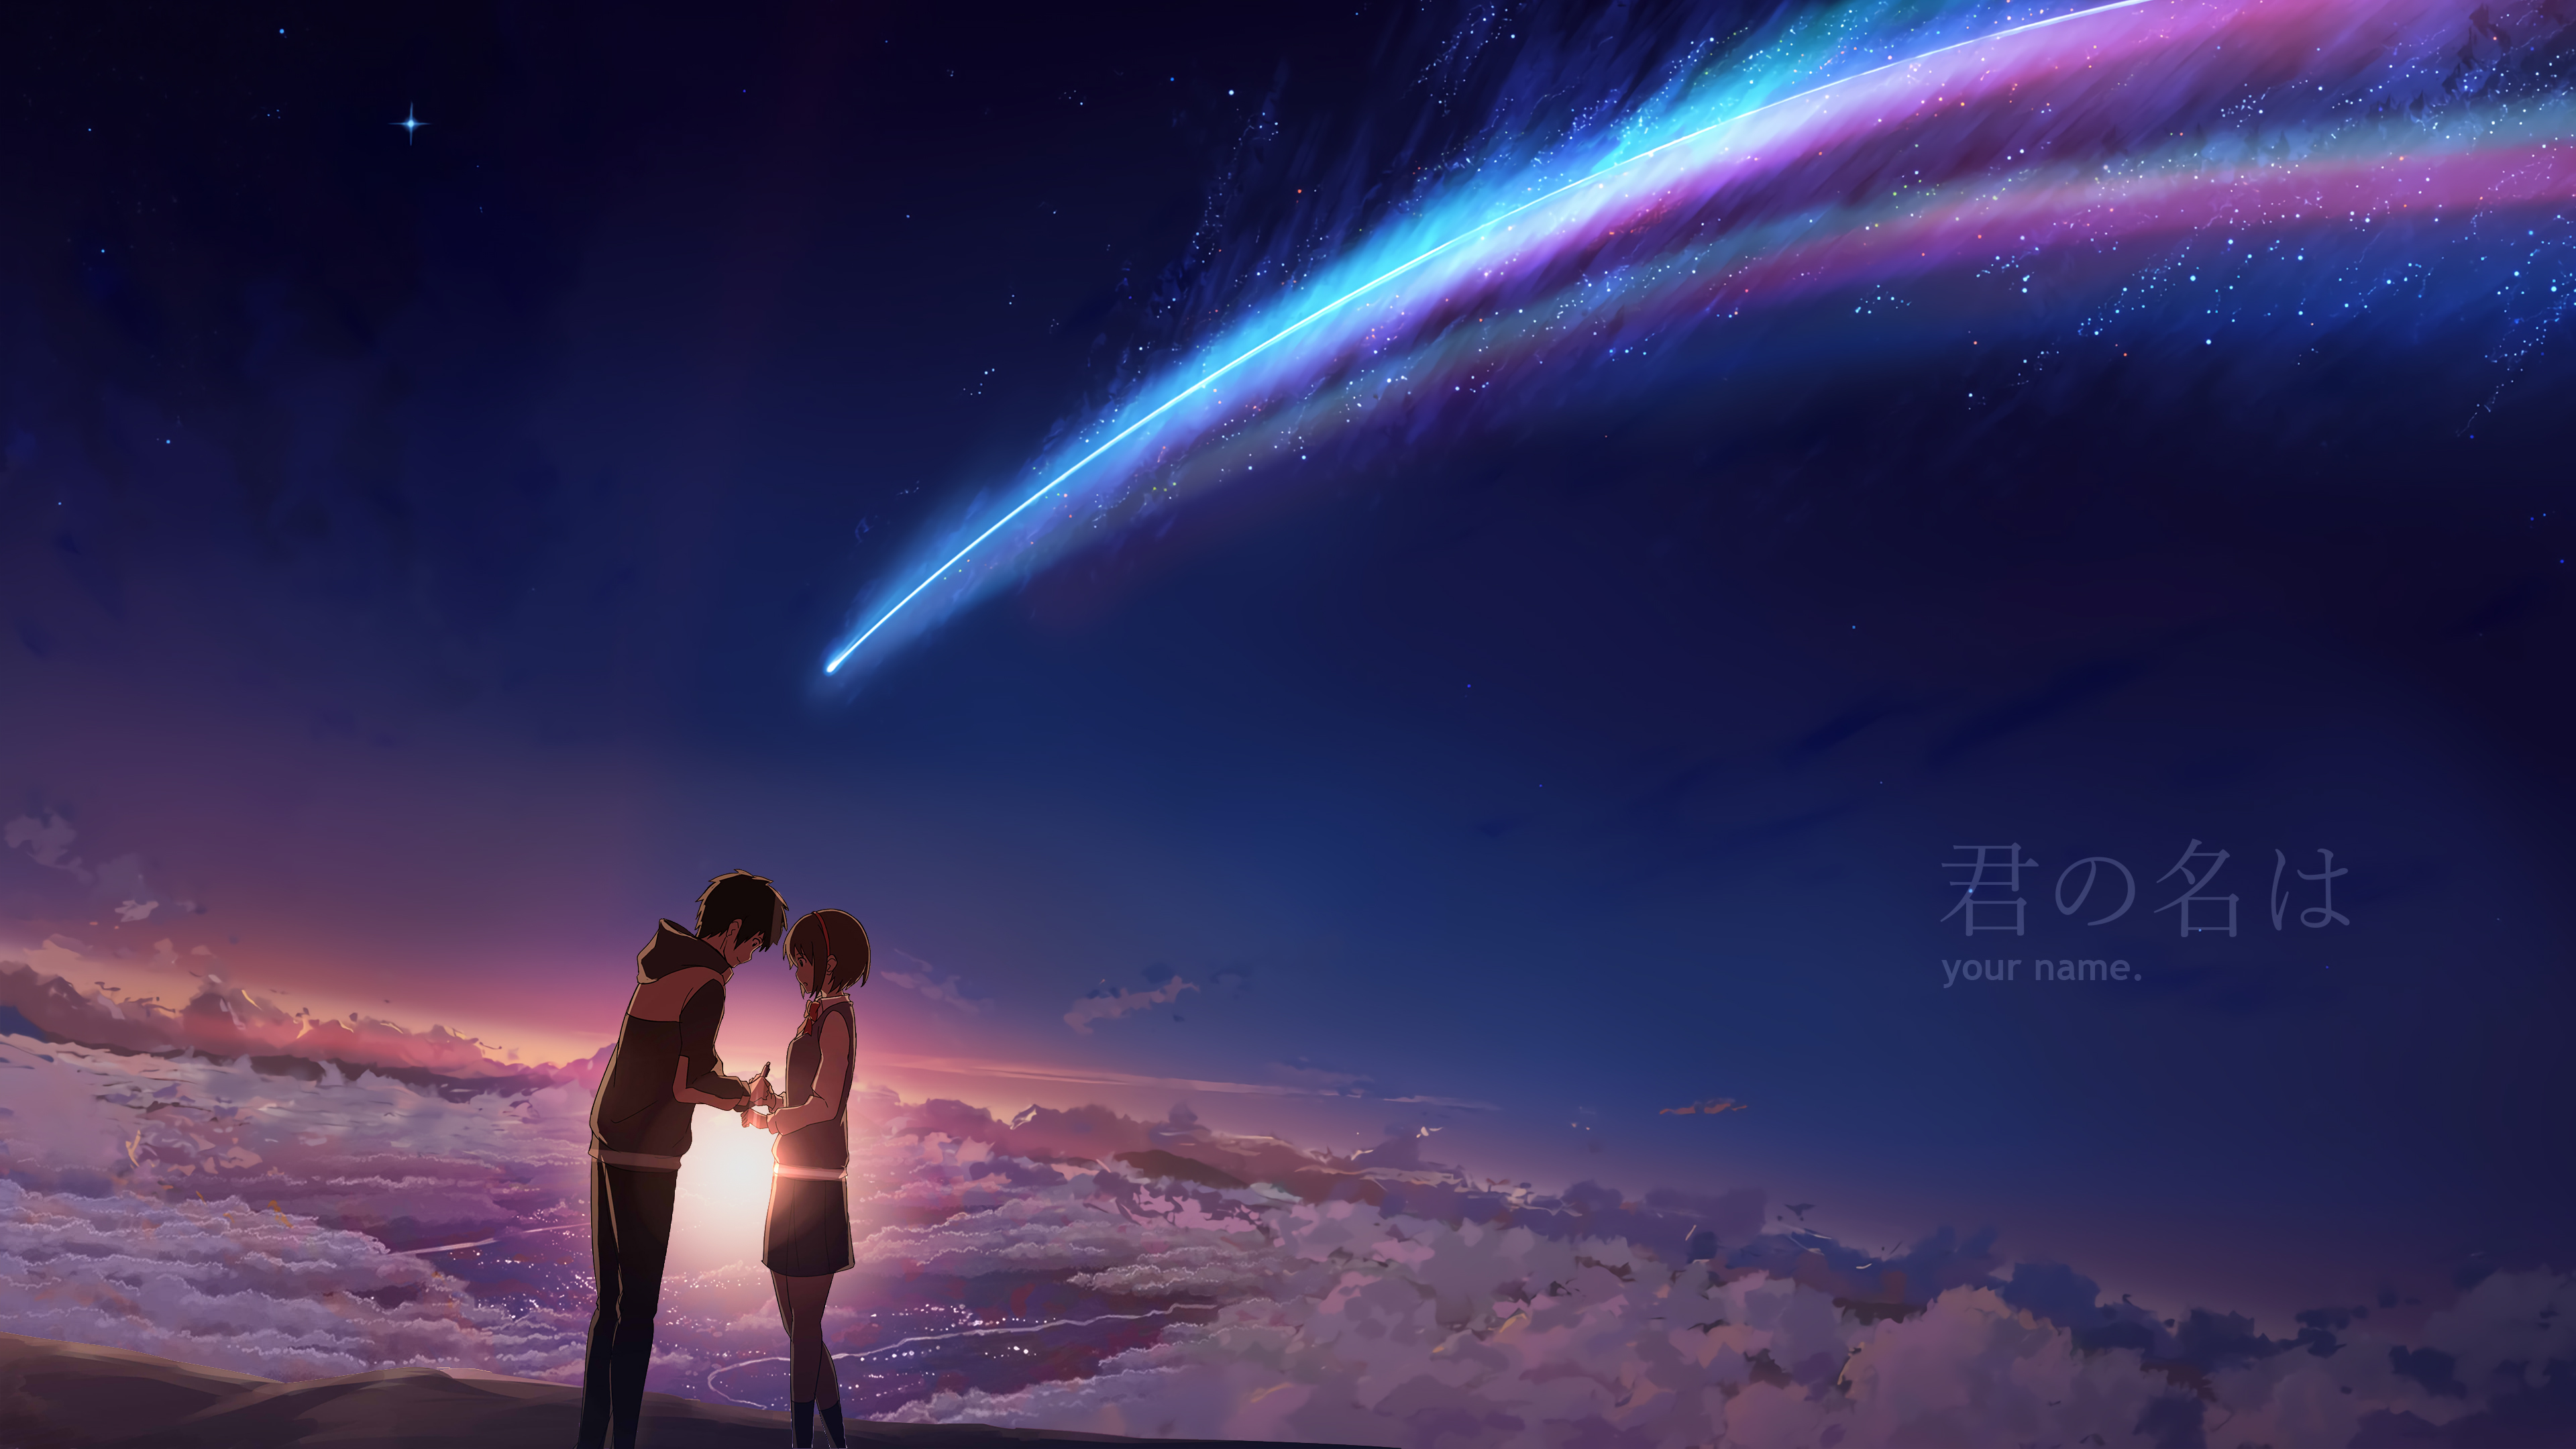 anime, comet, cloud, sky, your name, kimi no na wa, mitsuha miyamizu, scenic, taki tachibana lock screen backgrounds